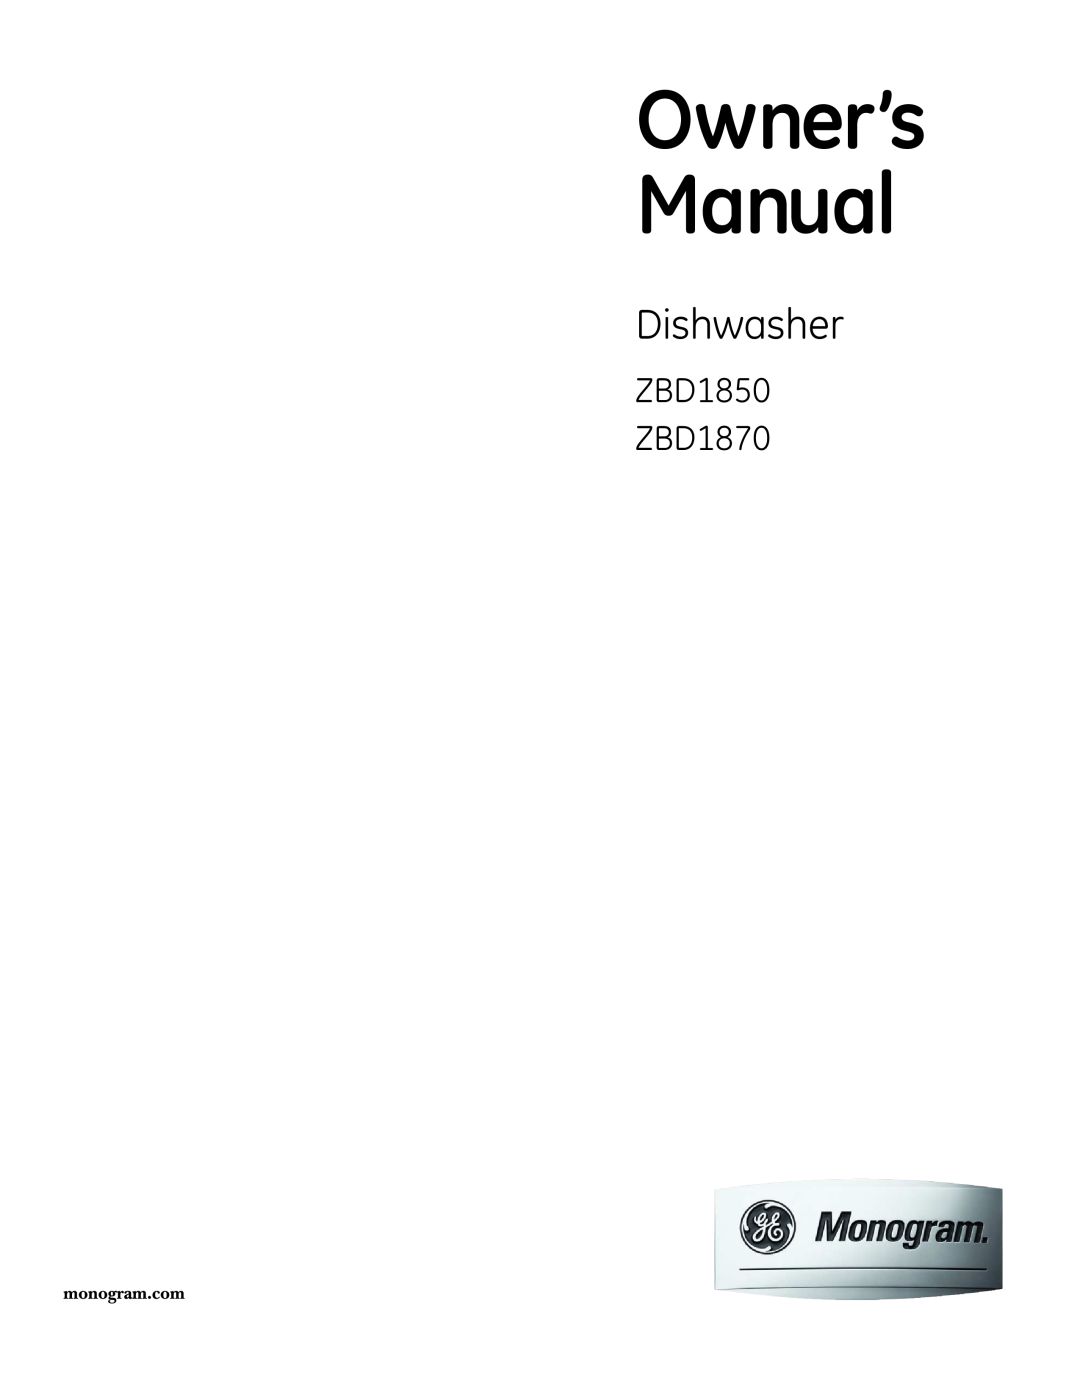 GE Monogram owner manual Dishwasher, ZBD1850 ZBD1870 